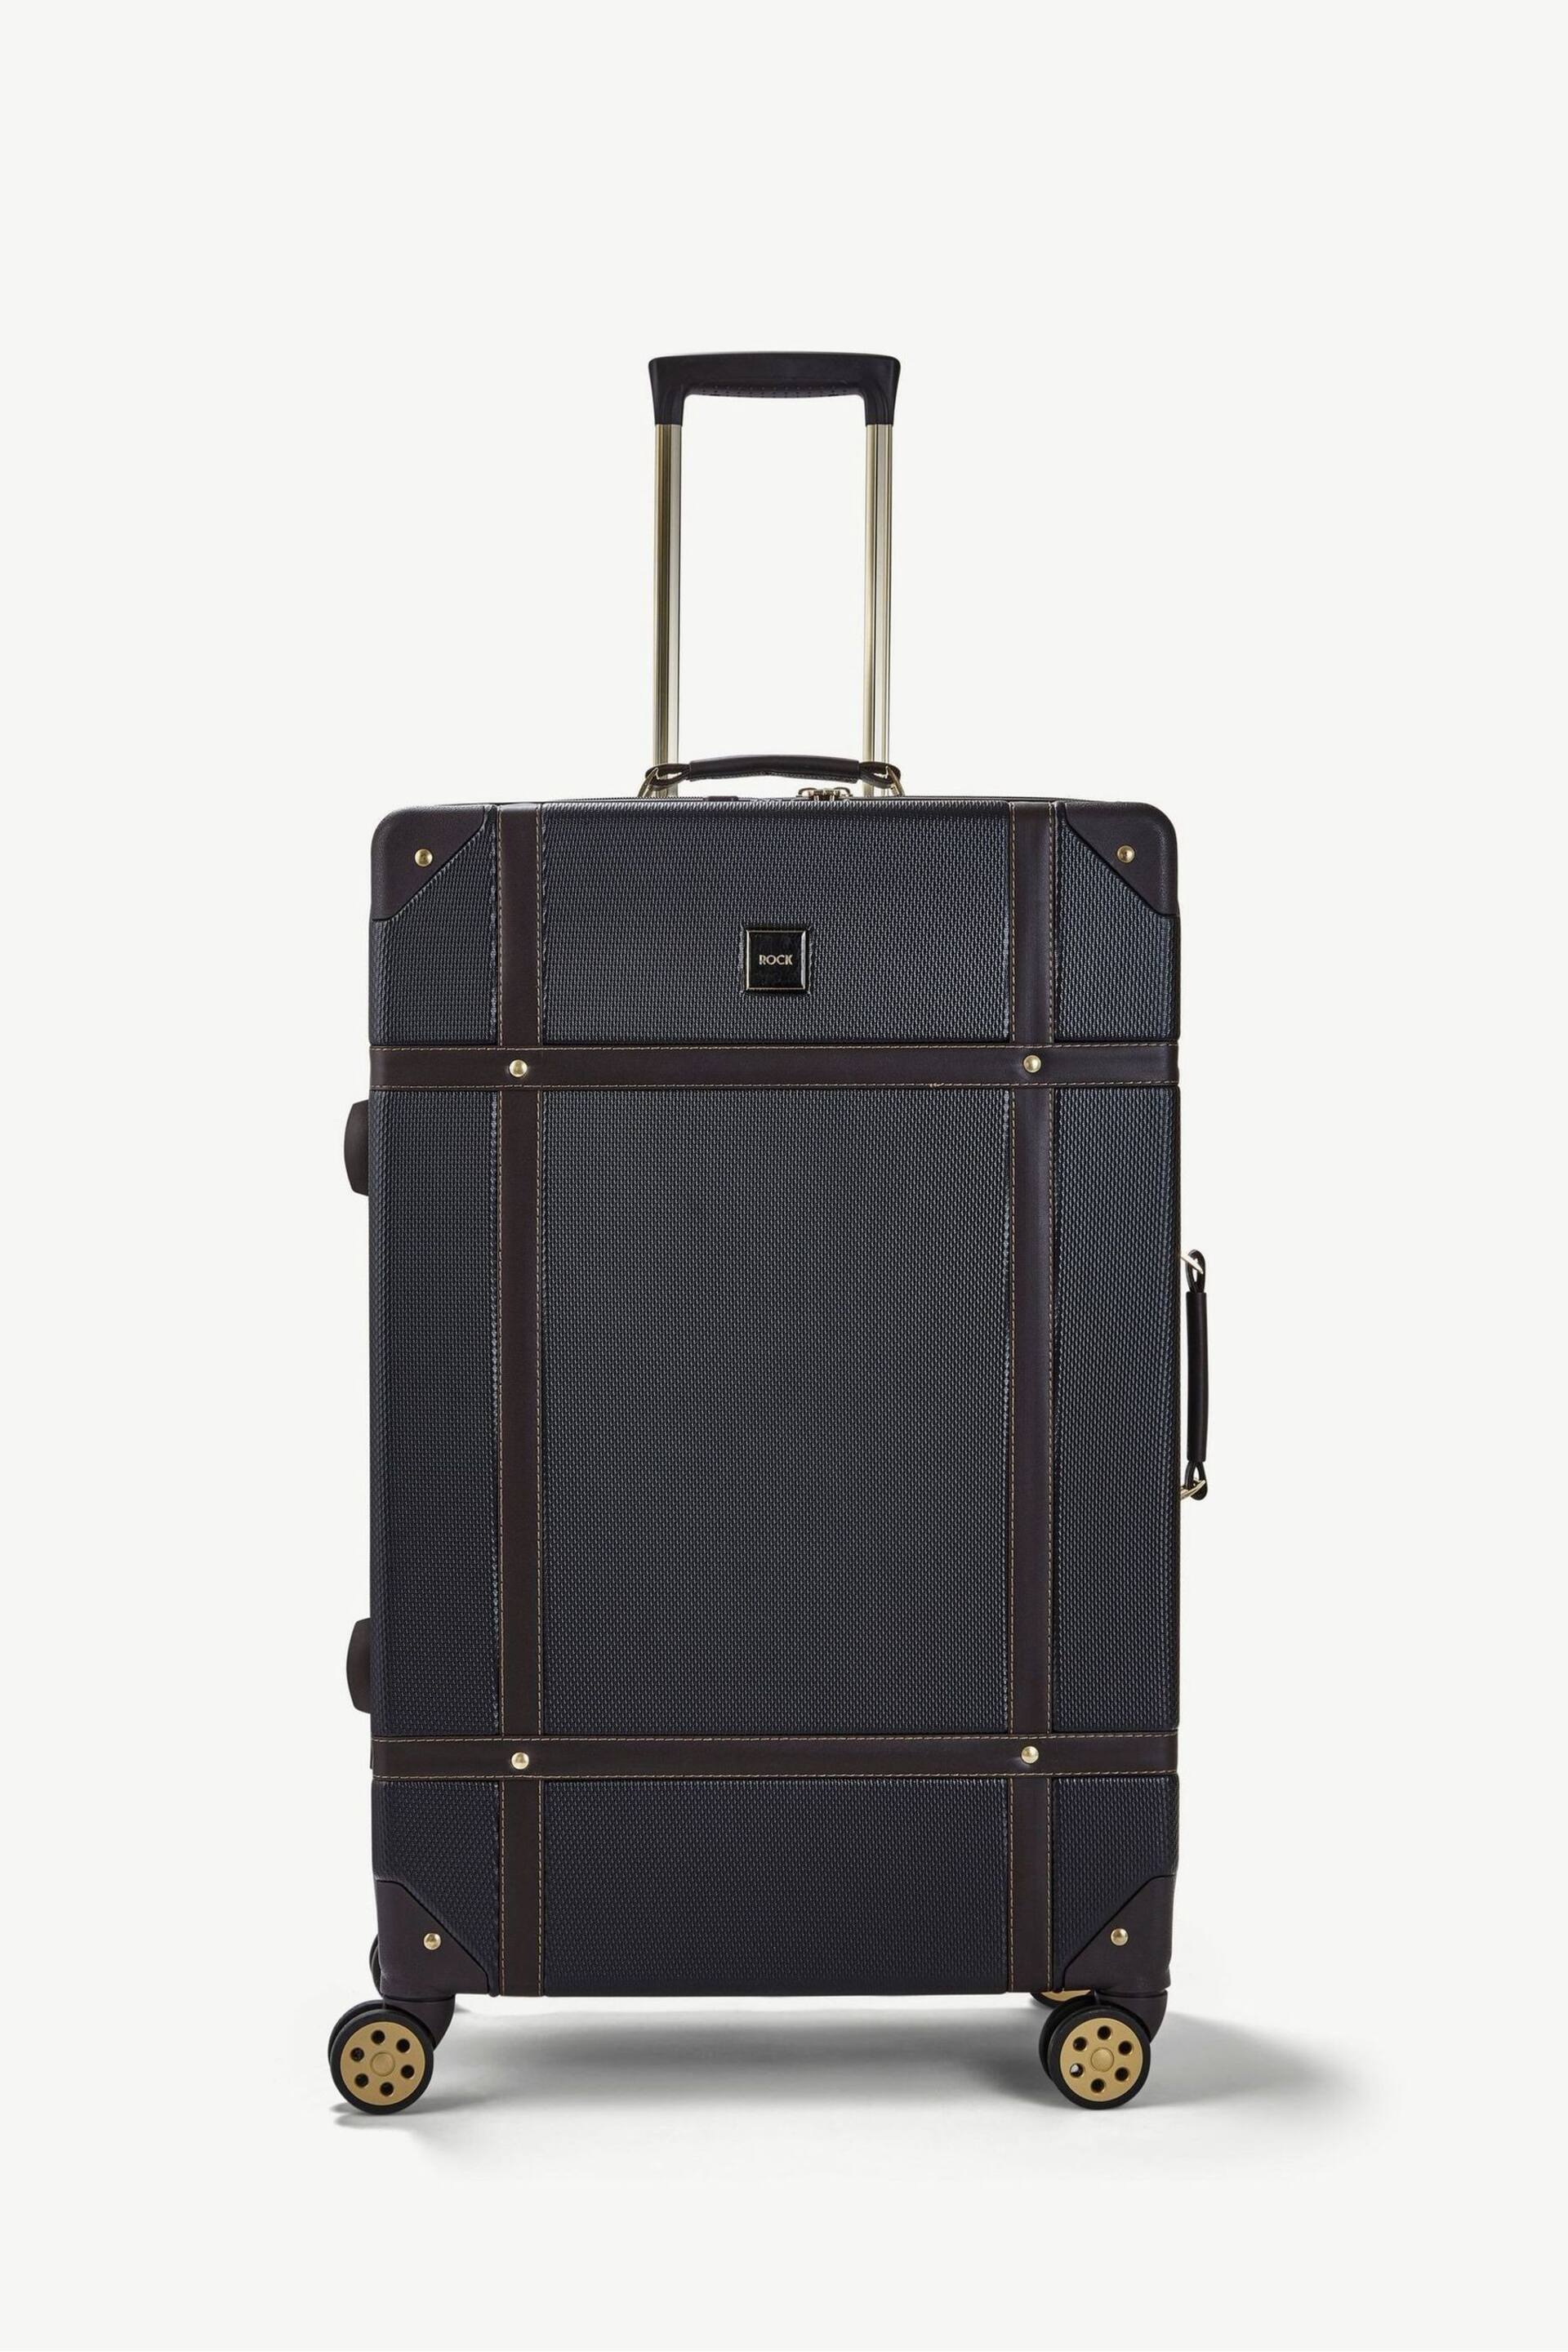 Rock Luggage Large Vintage Suitcase - Image 2 of 7